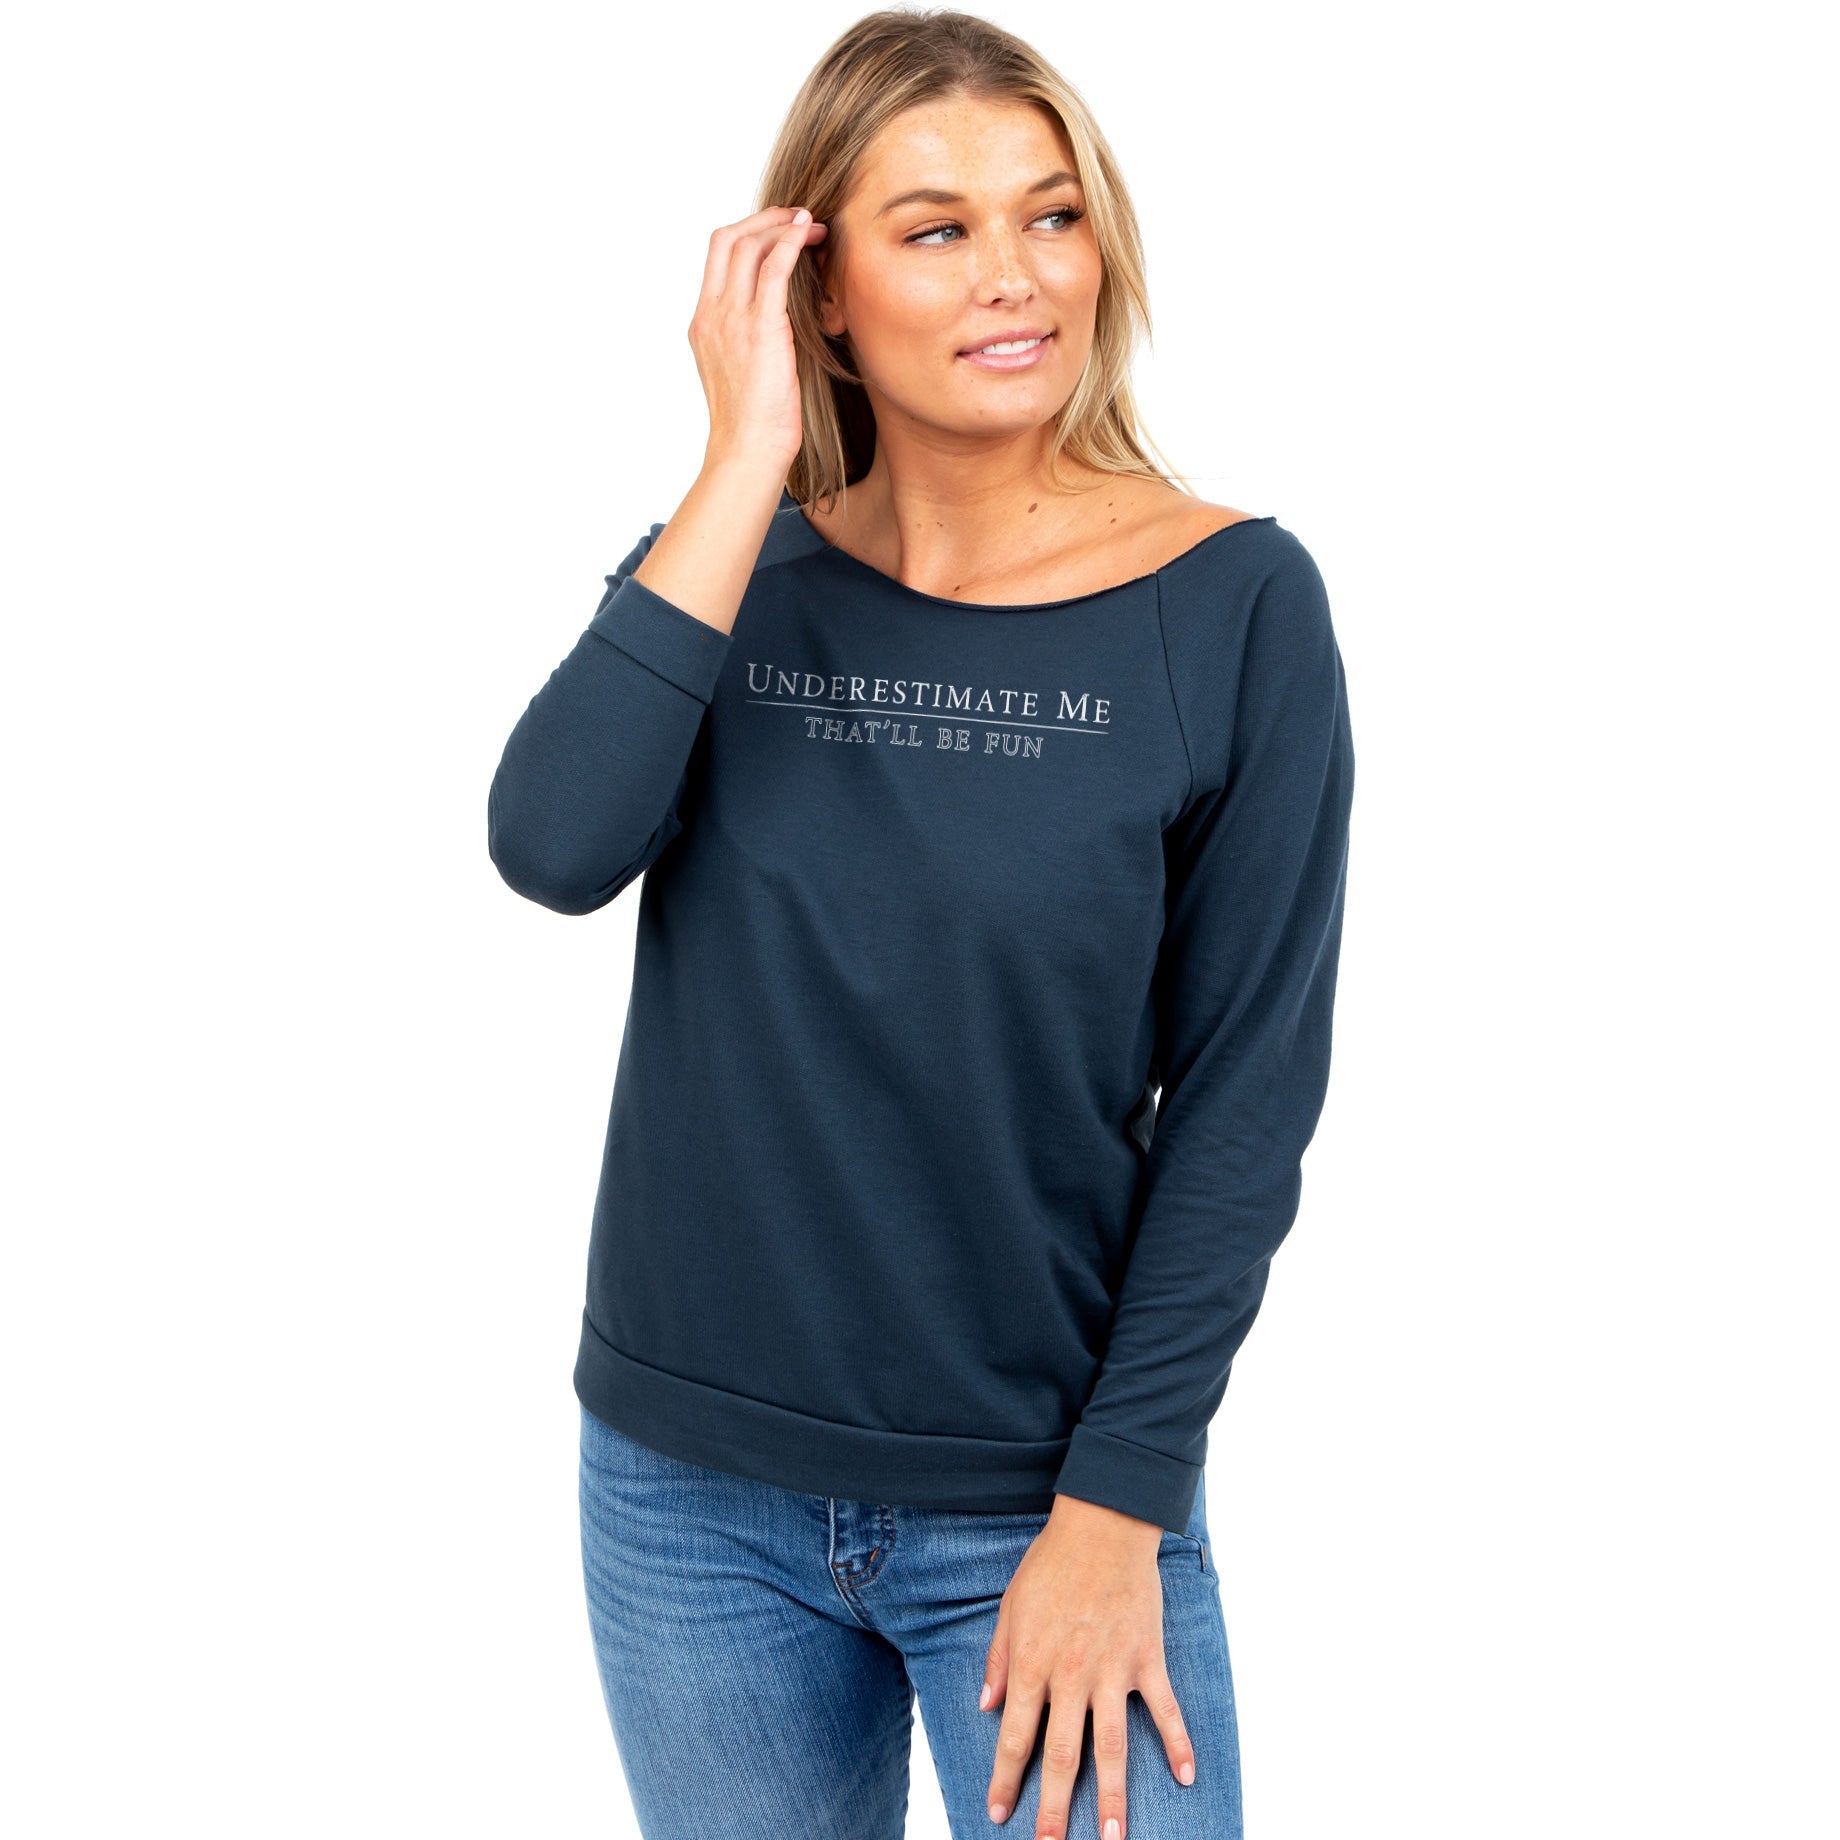 Drain This Shirt Funny Humor Tee, Hoodie, Long sleeve, Sweatshirt, Tank top,  Ladies Tees - Q-Finder Trending Design T Shirt